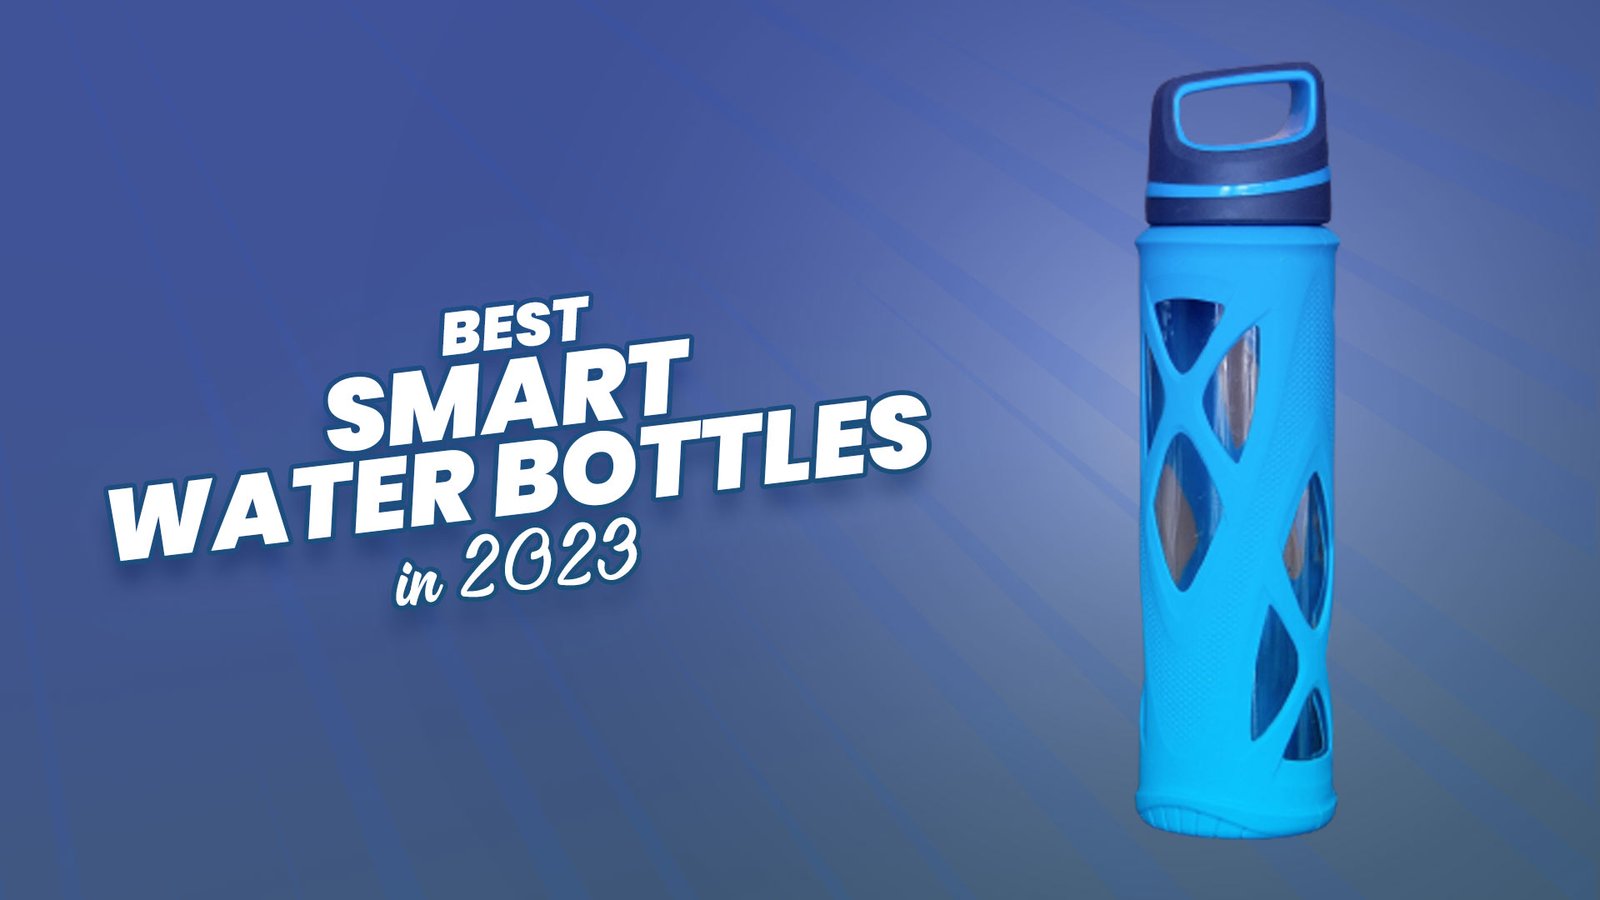 Best Smart Water Bottles in 2023